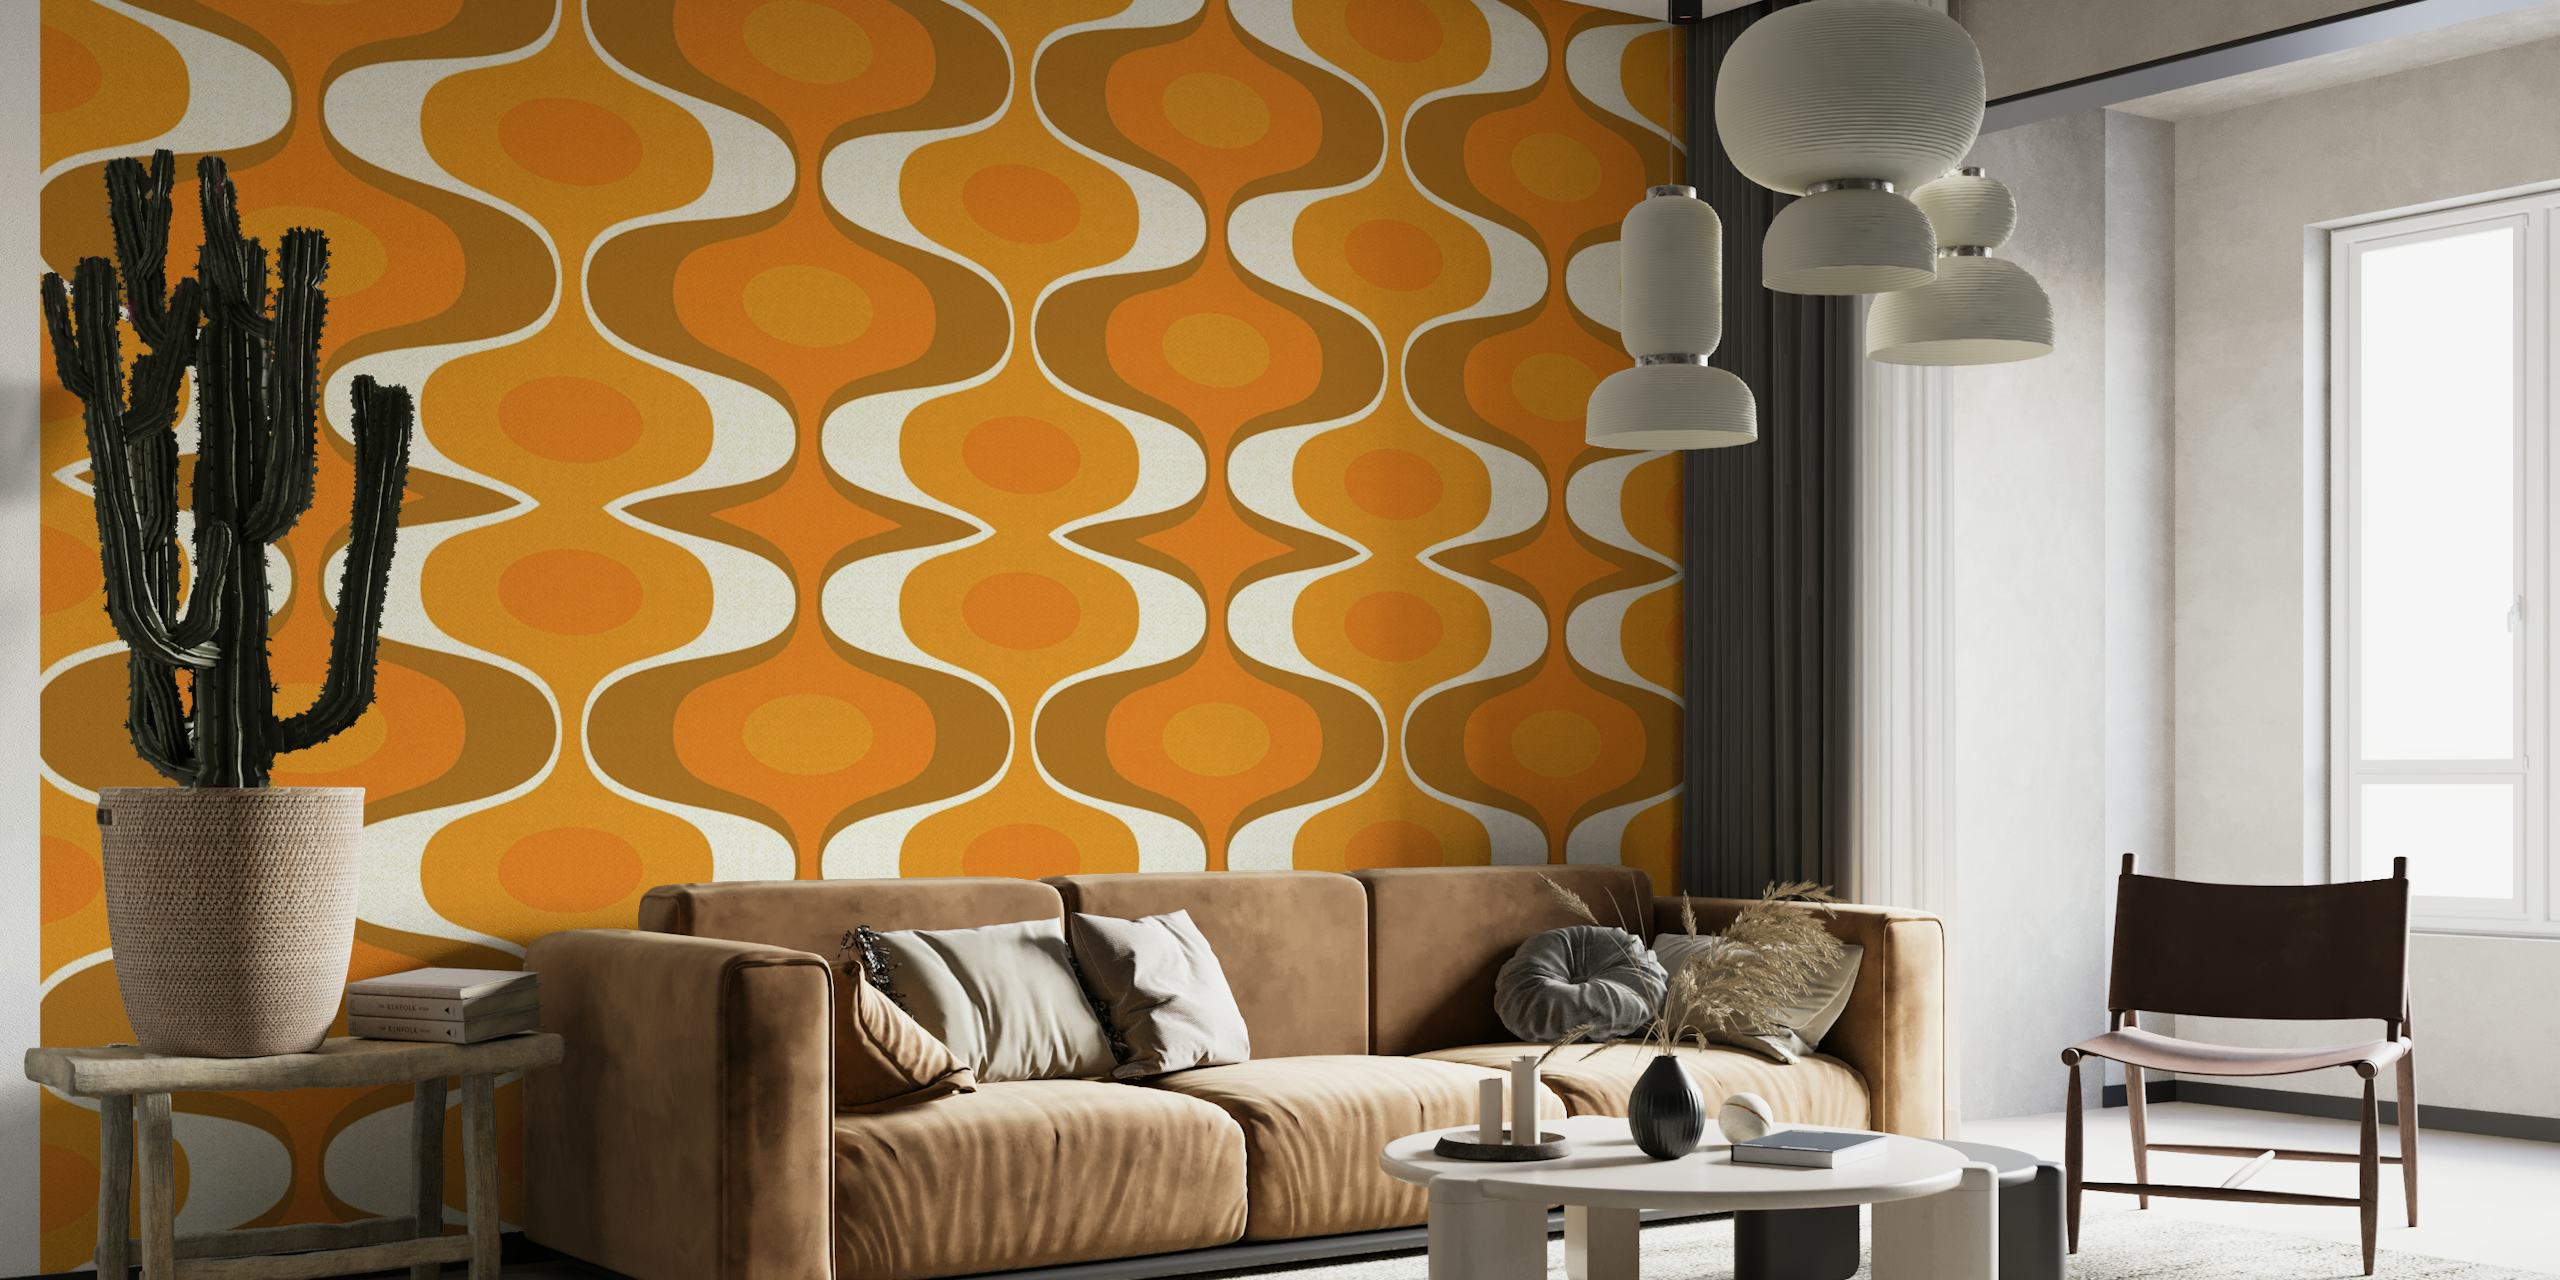 Papier peint mural à motif géométrique avec des tons orange et terre reflétant le style rétro des années 70